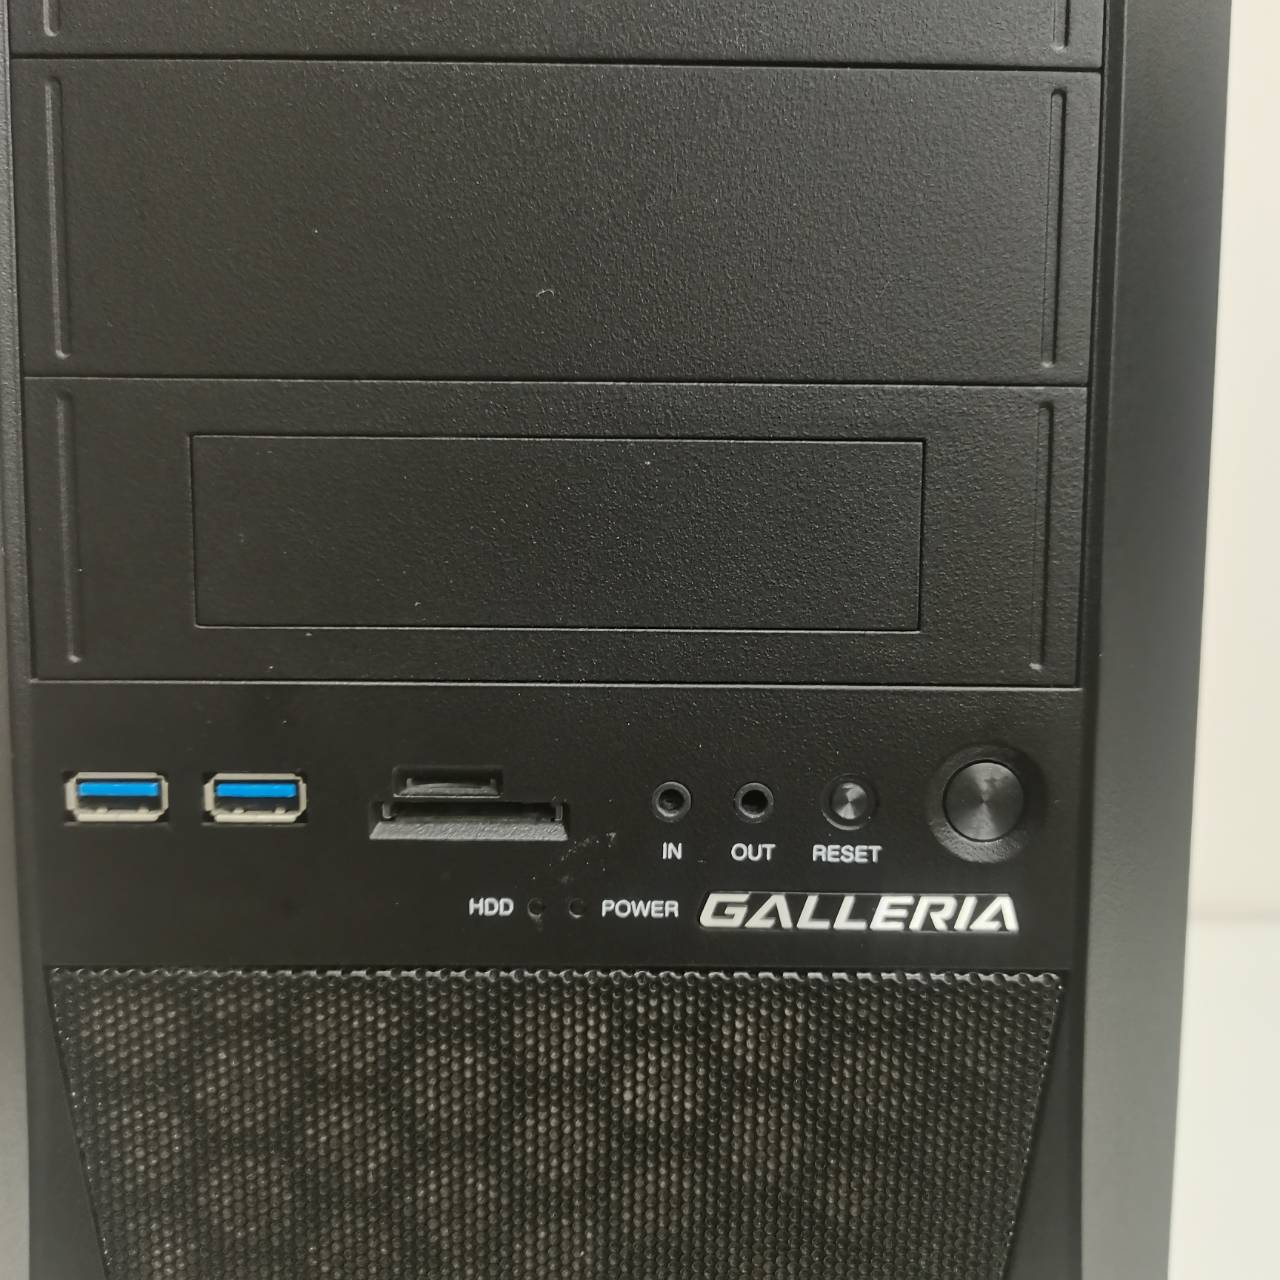 GALLERIA XF Core i7 7700K/16GB/GTX1070 8GB/SSD525GB/HDD3TB/Windows10 64bit  管G